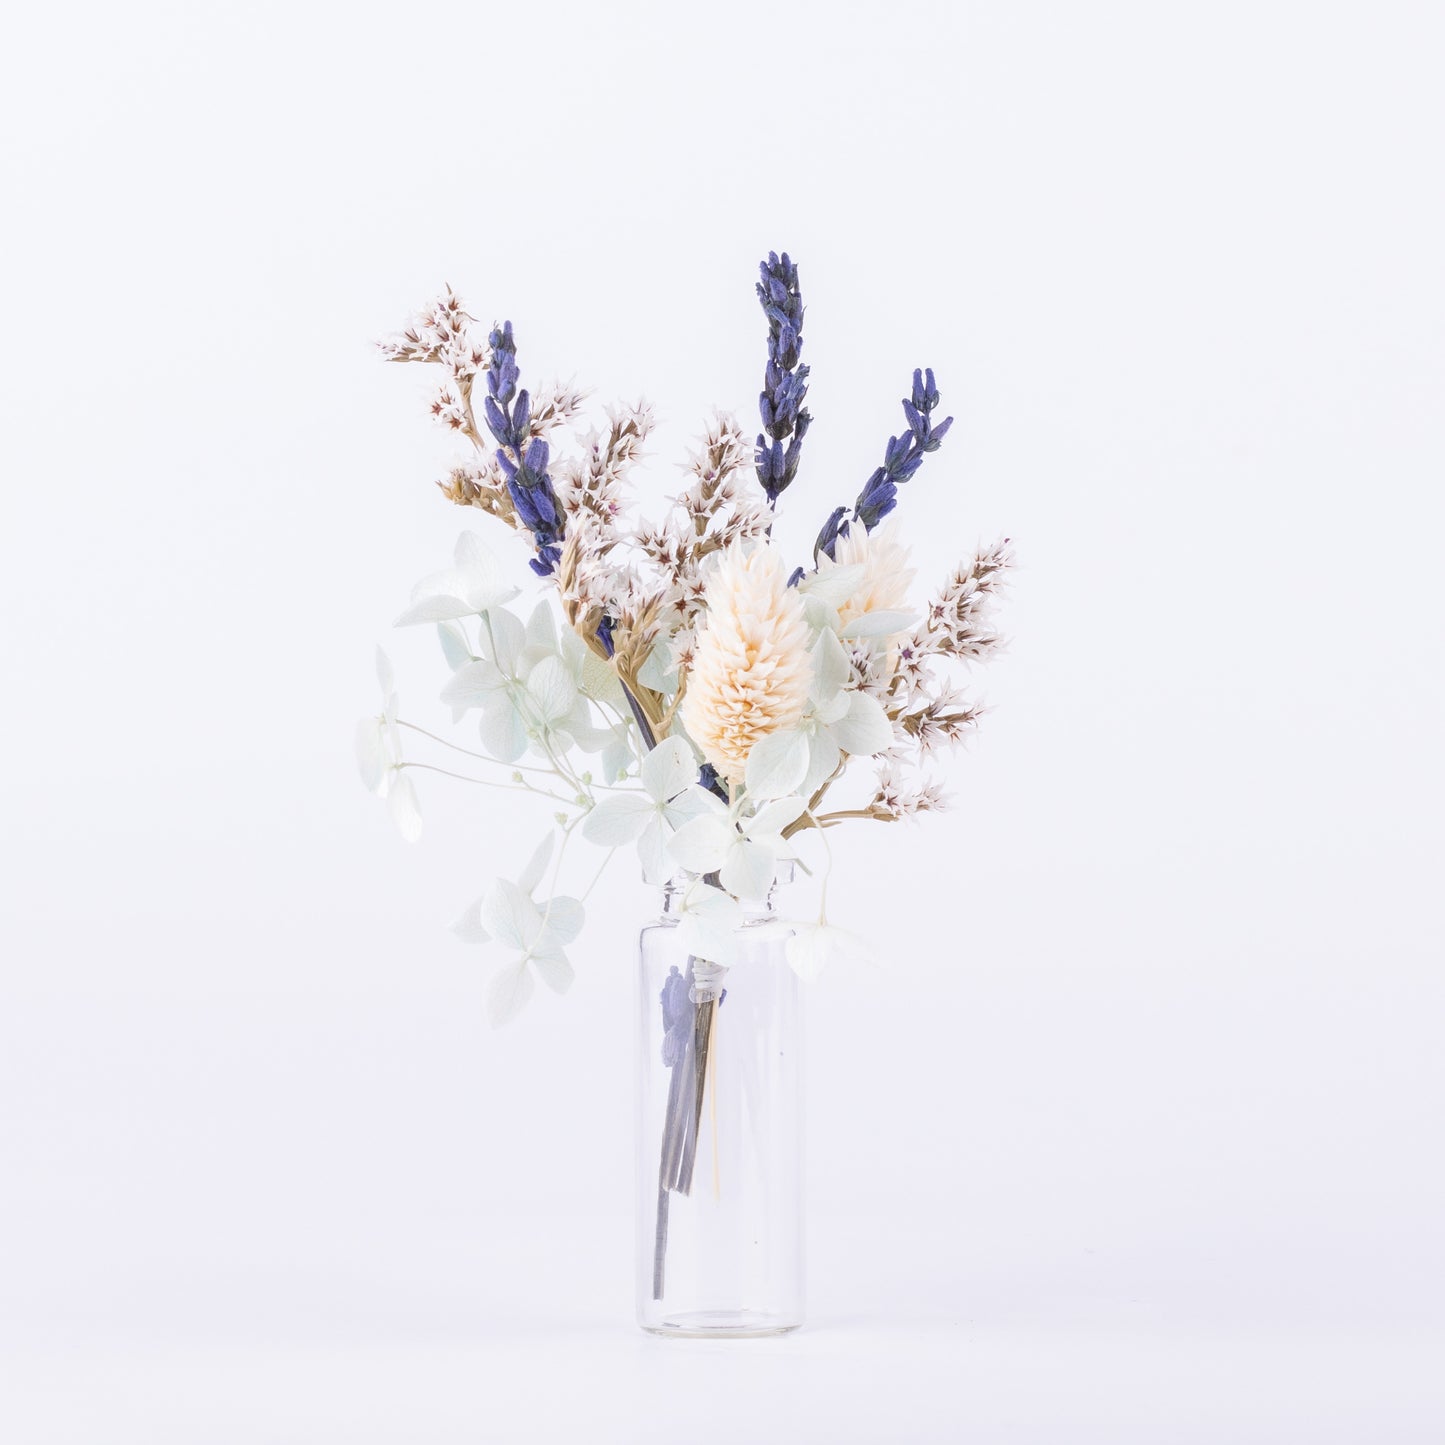 Kleiner Blumenstrauß mit Vase und Geschenkverpackung - Geschenk für Hochzeit und Geburtstag